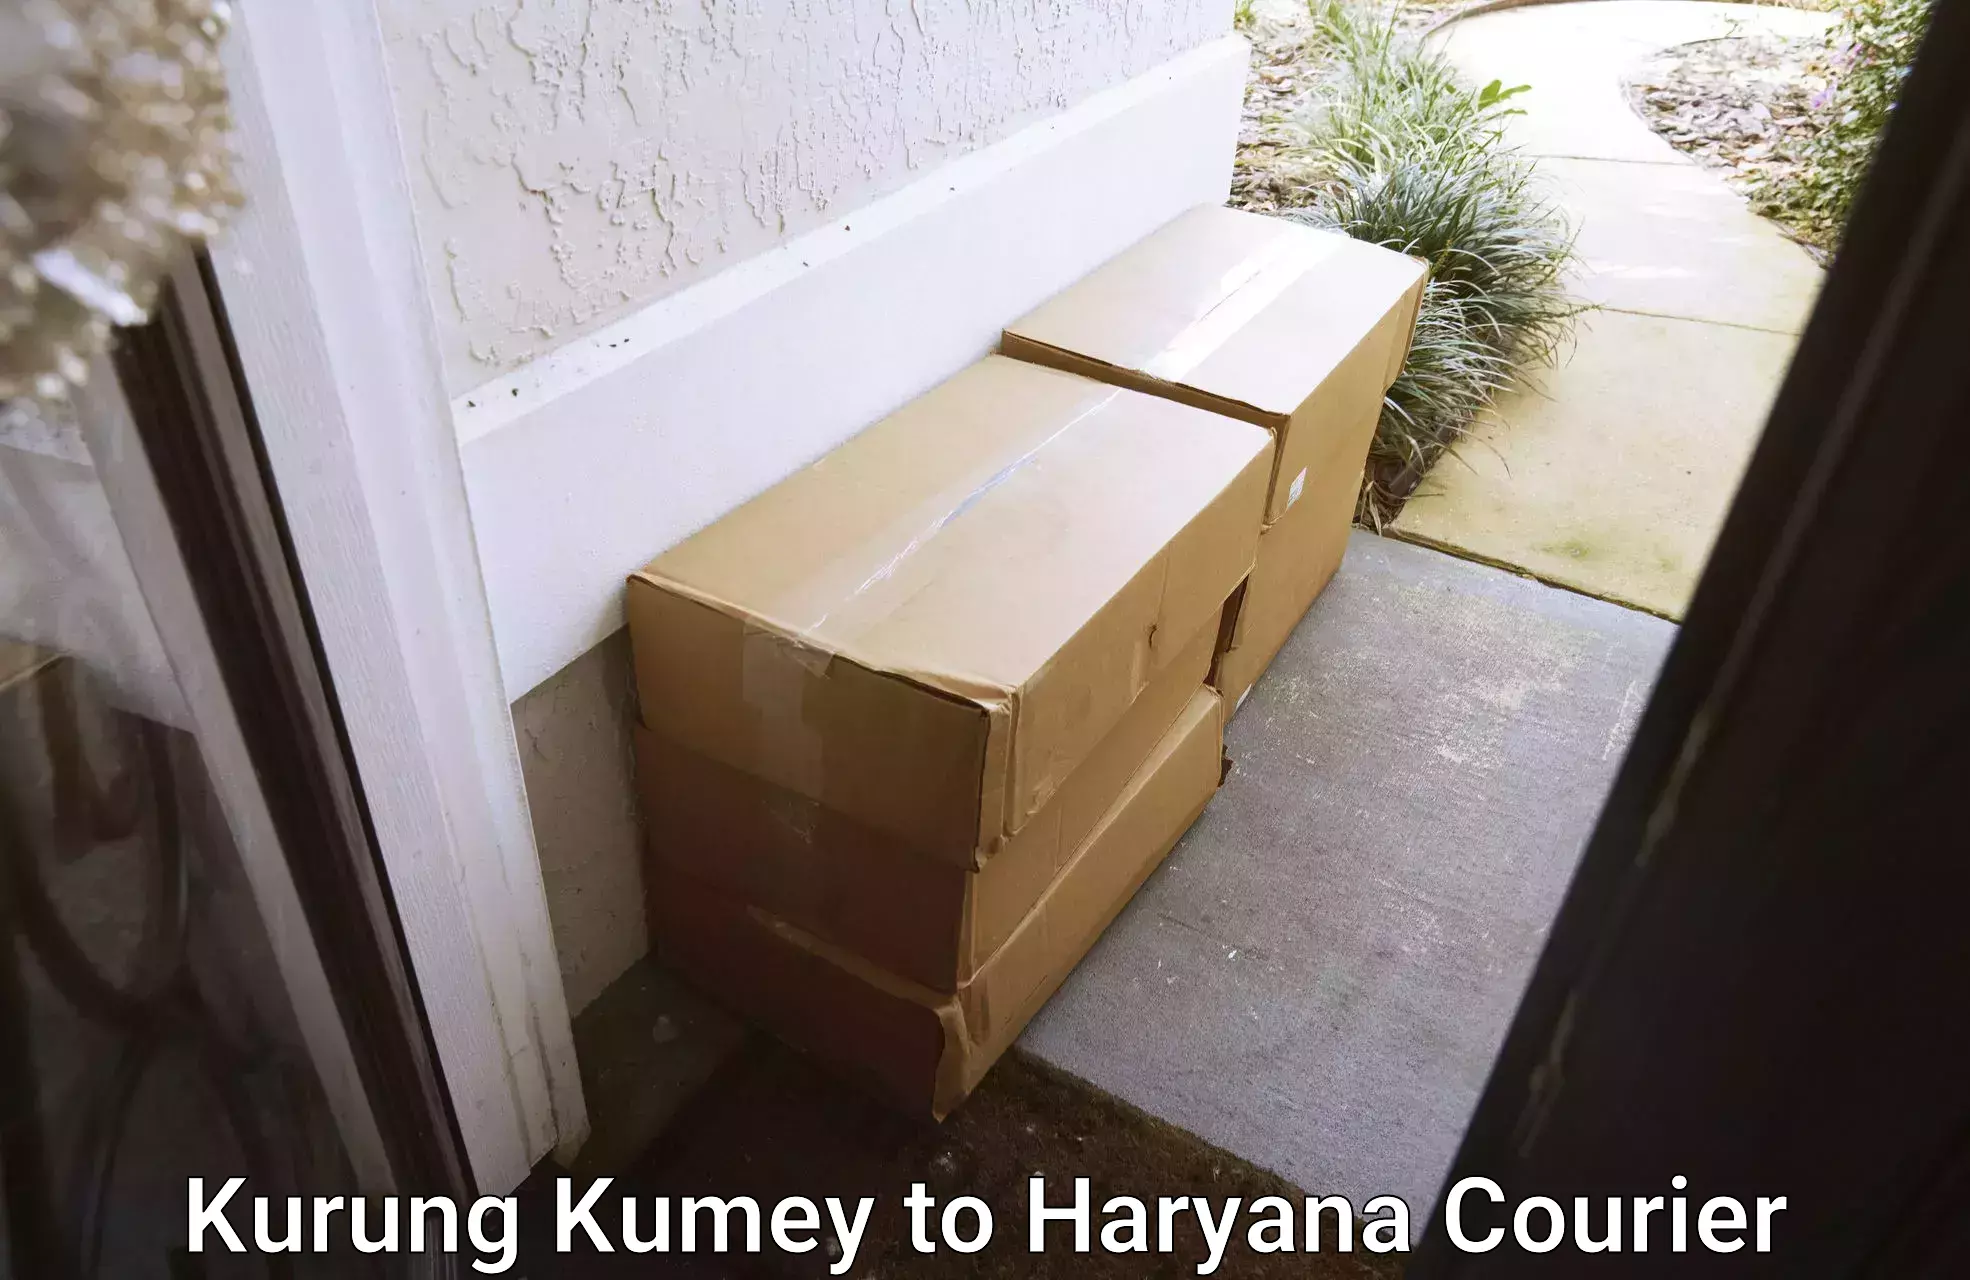 Local delivery service Kurung Kumey to Narwana